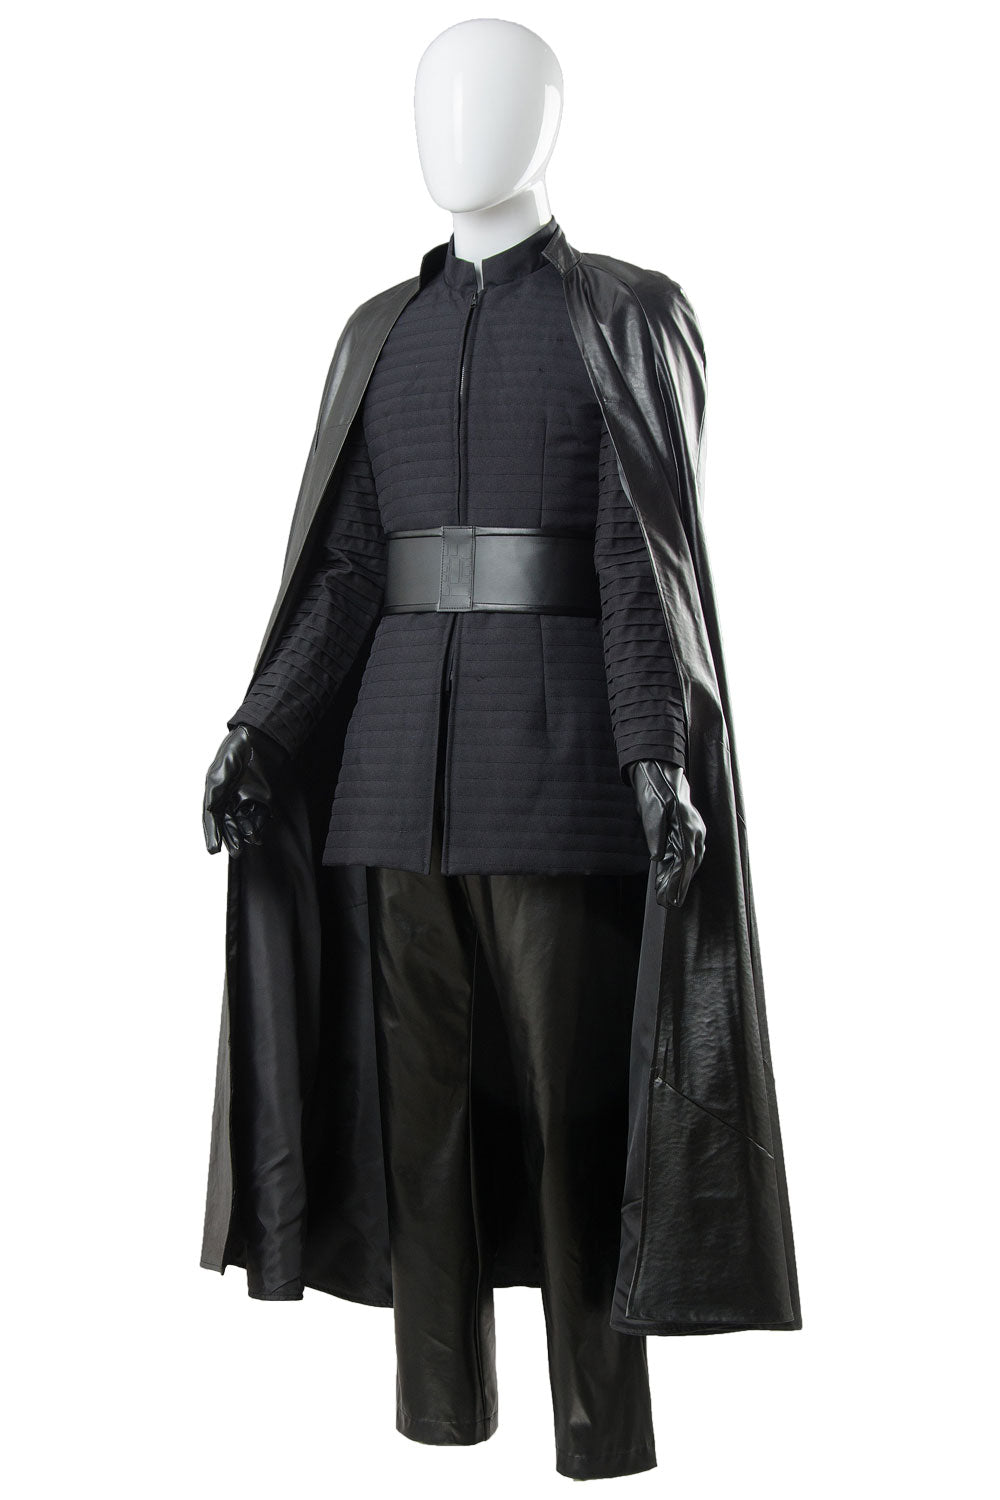 Die letzten Jedi Kylo Ren Outfit Ver.2 Cosplay Kostüm